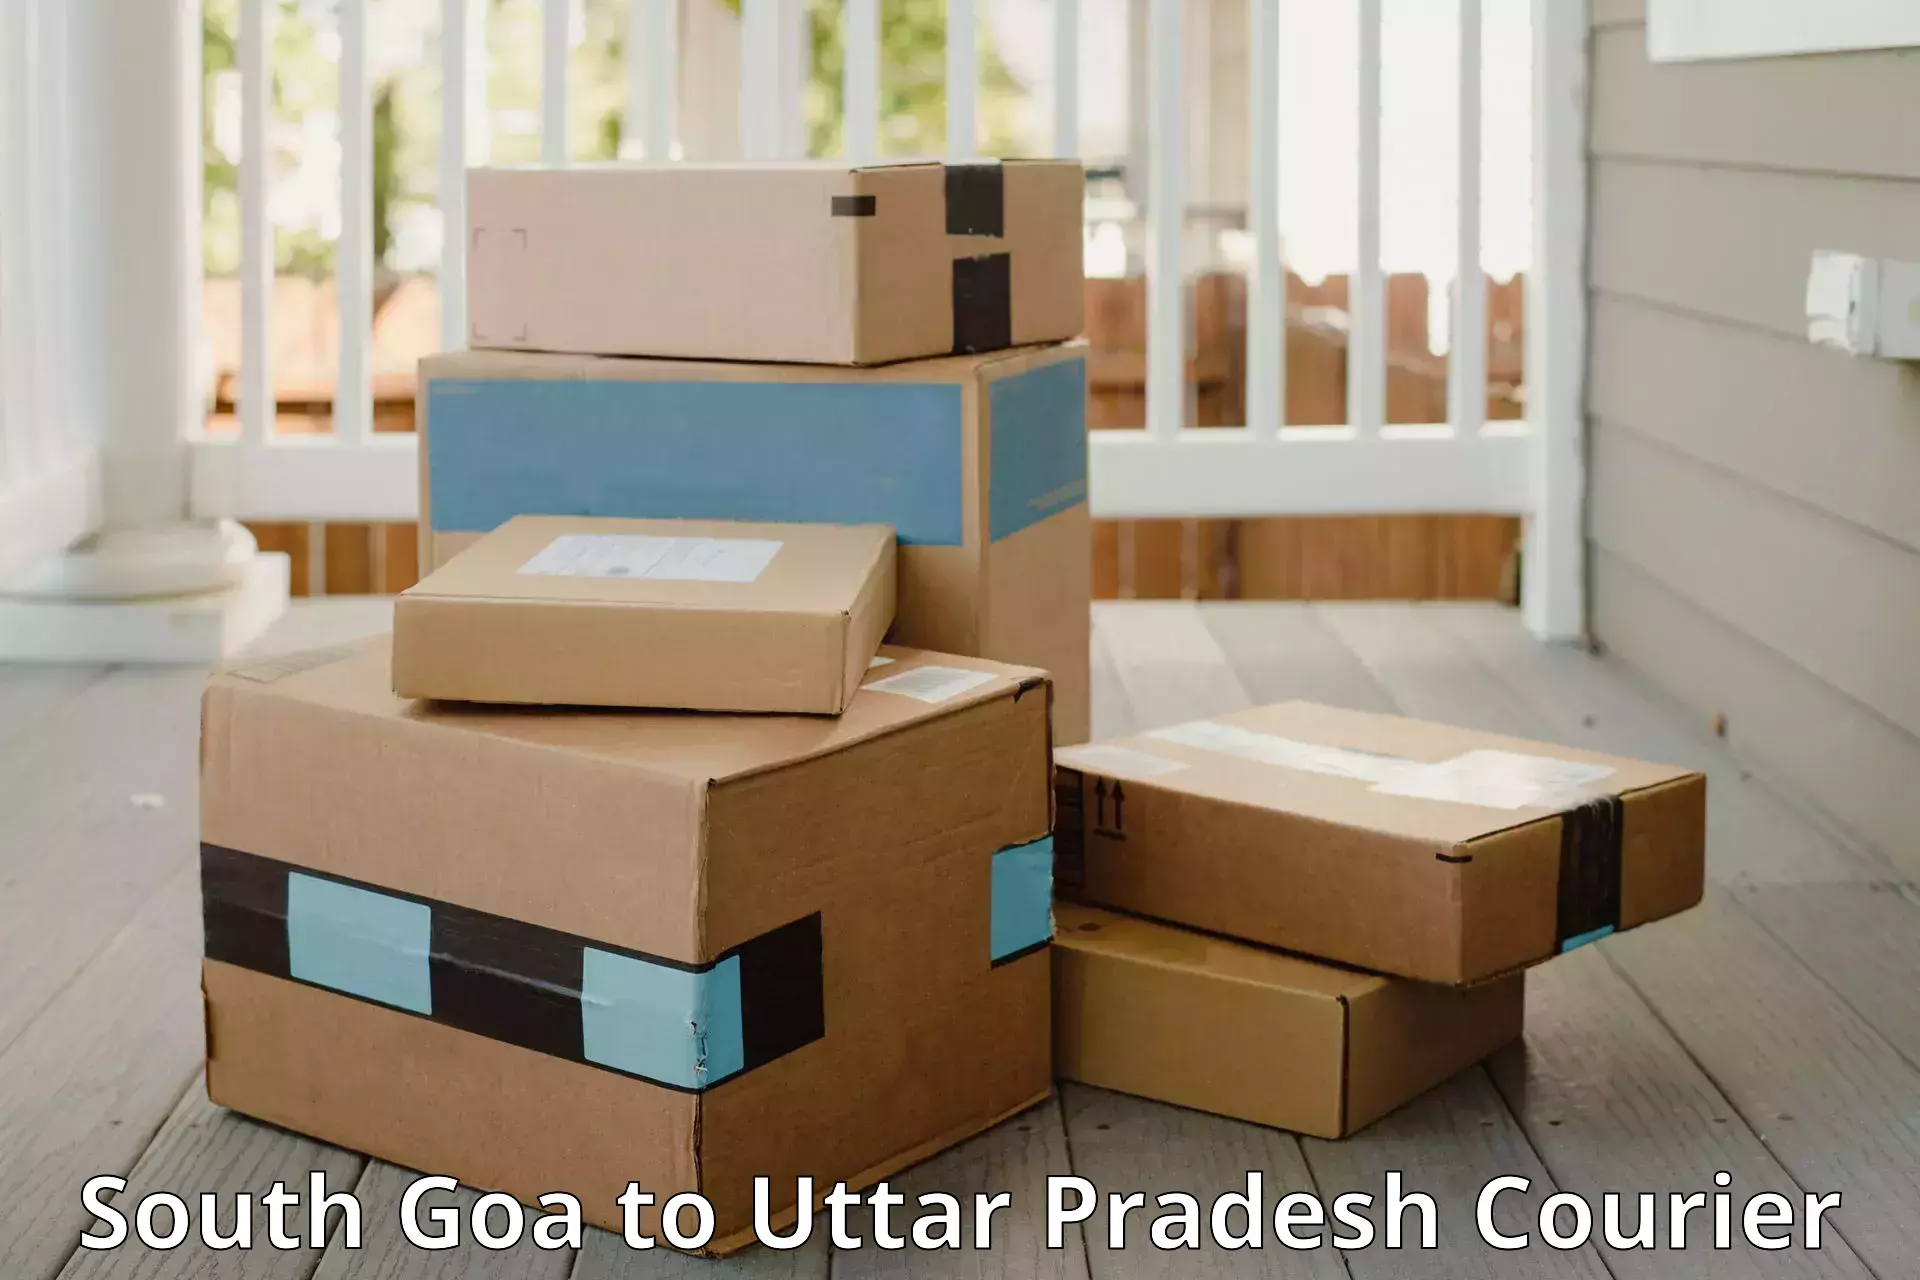 Baggage courier service South Goa to Atarra